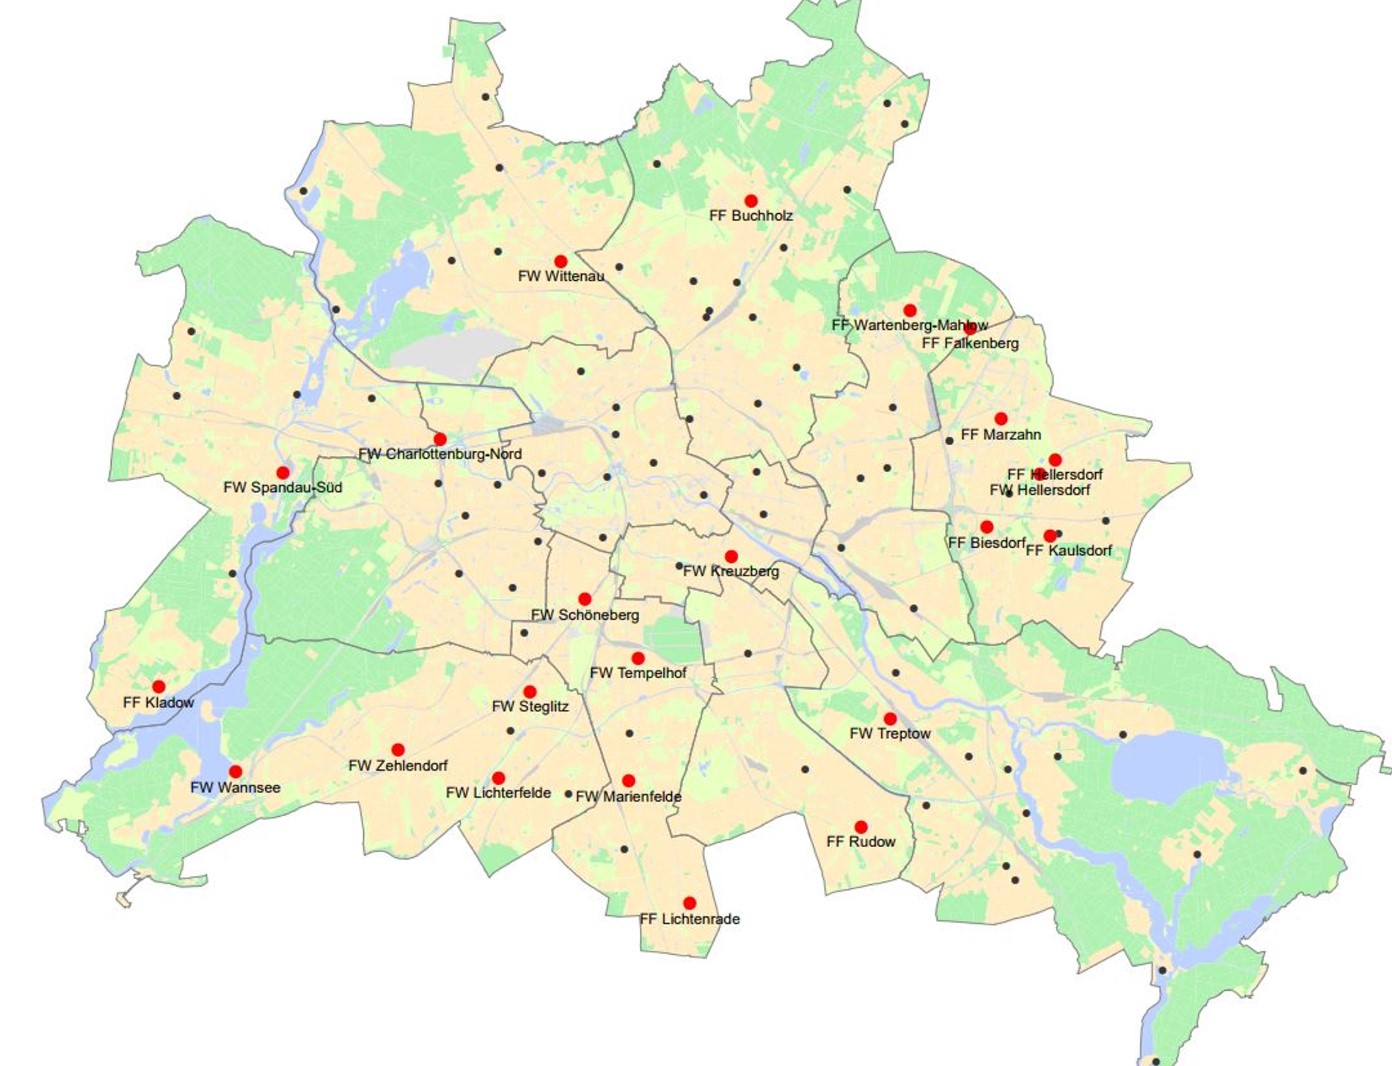 Grundstückspotenzialanalysen von 23 Feuerwehrstandorten in Berlin